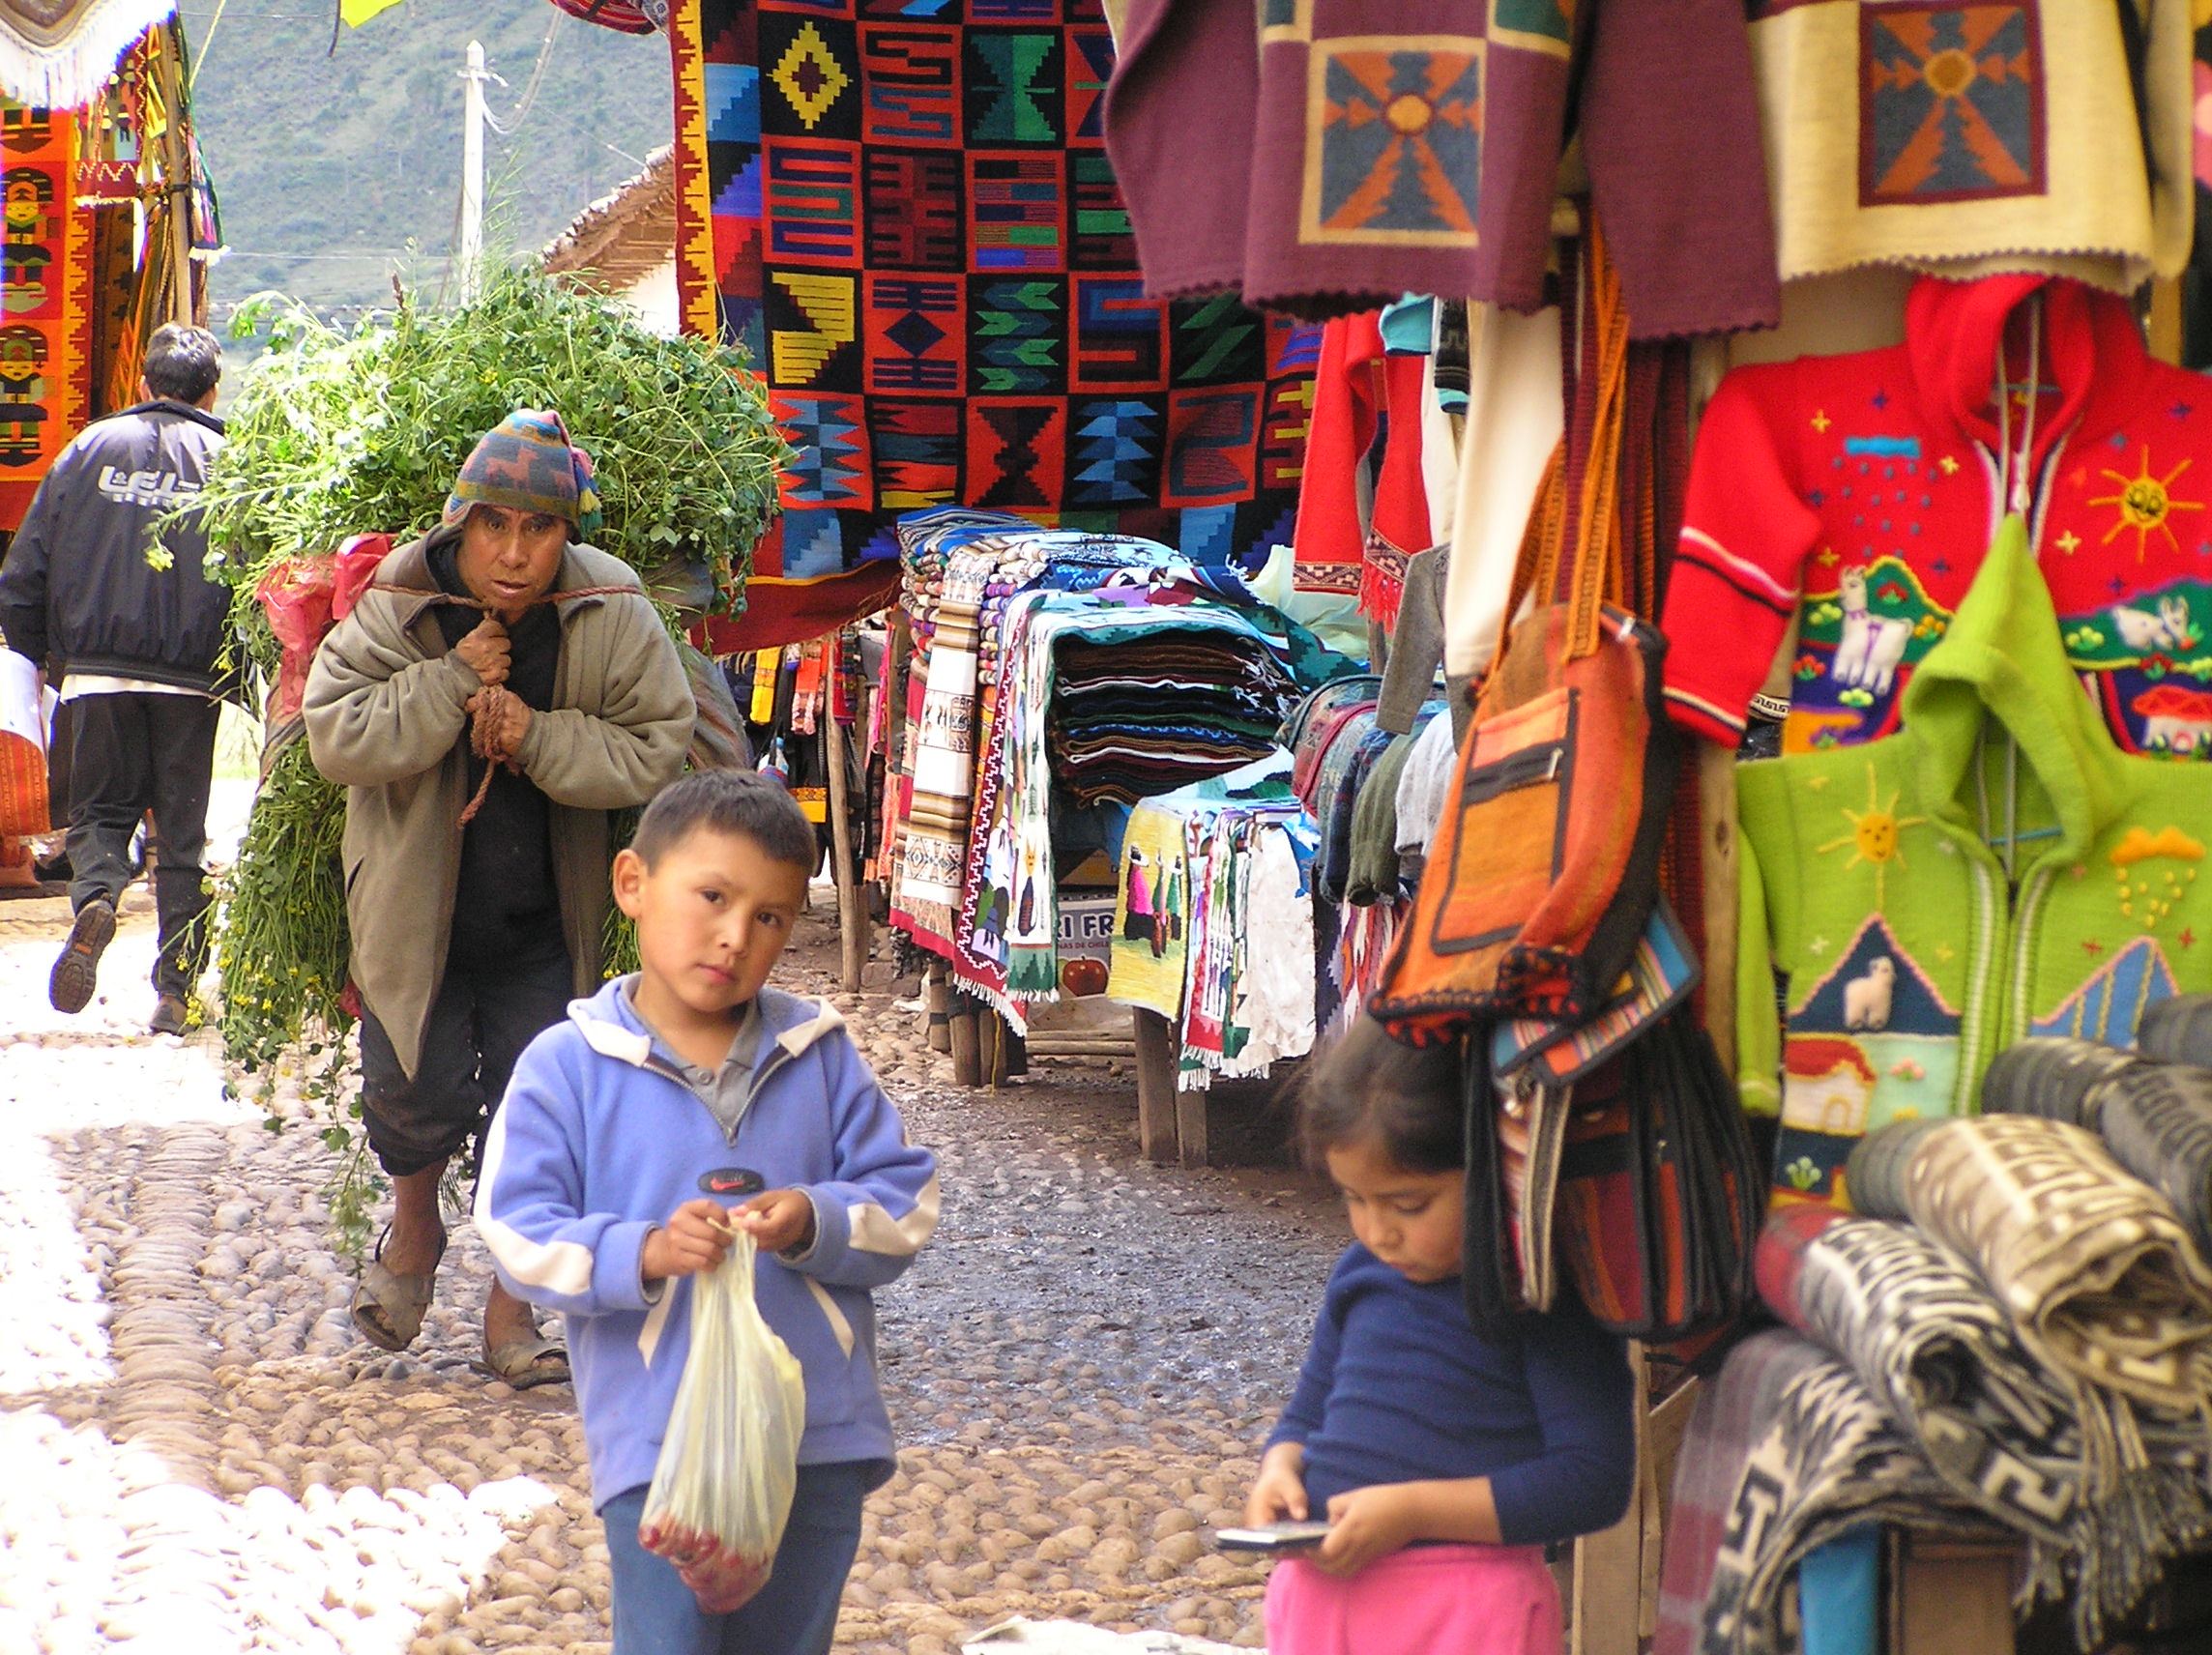 A market in Peru